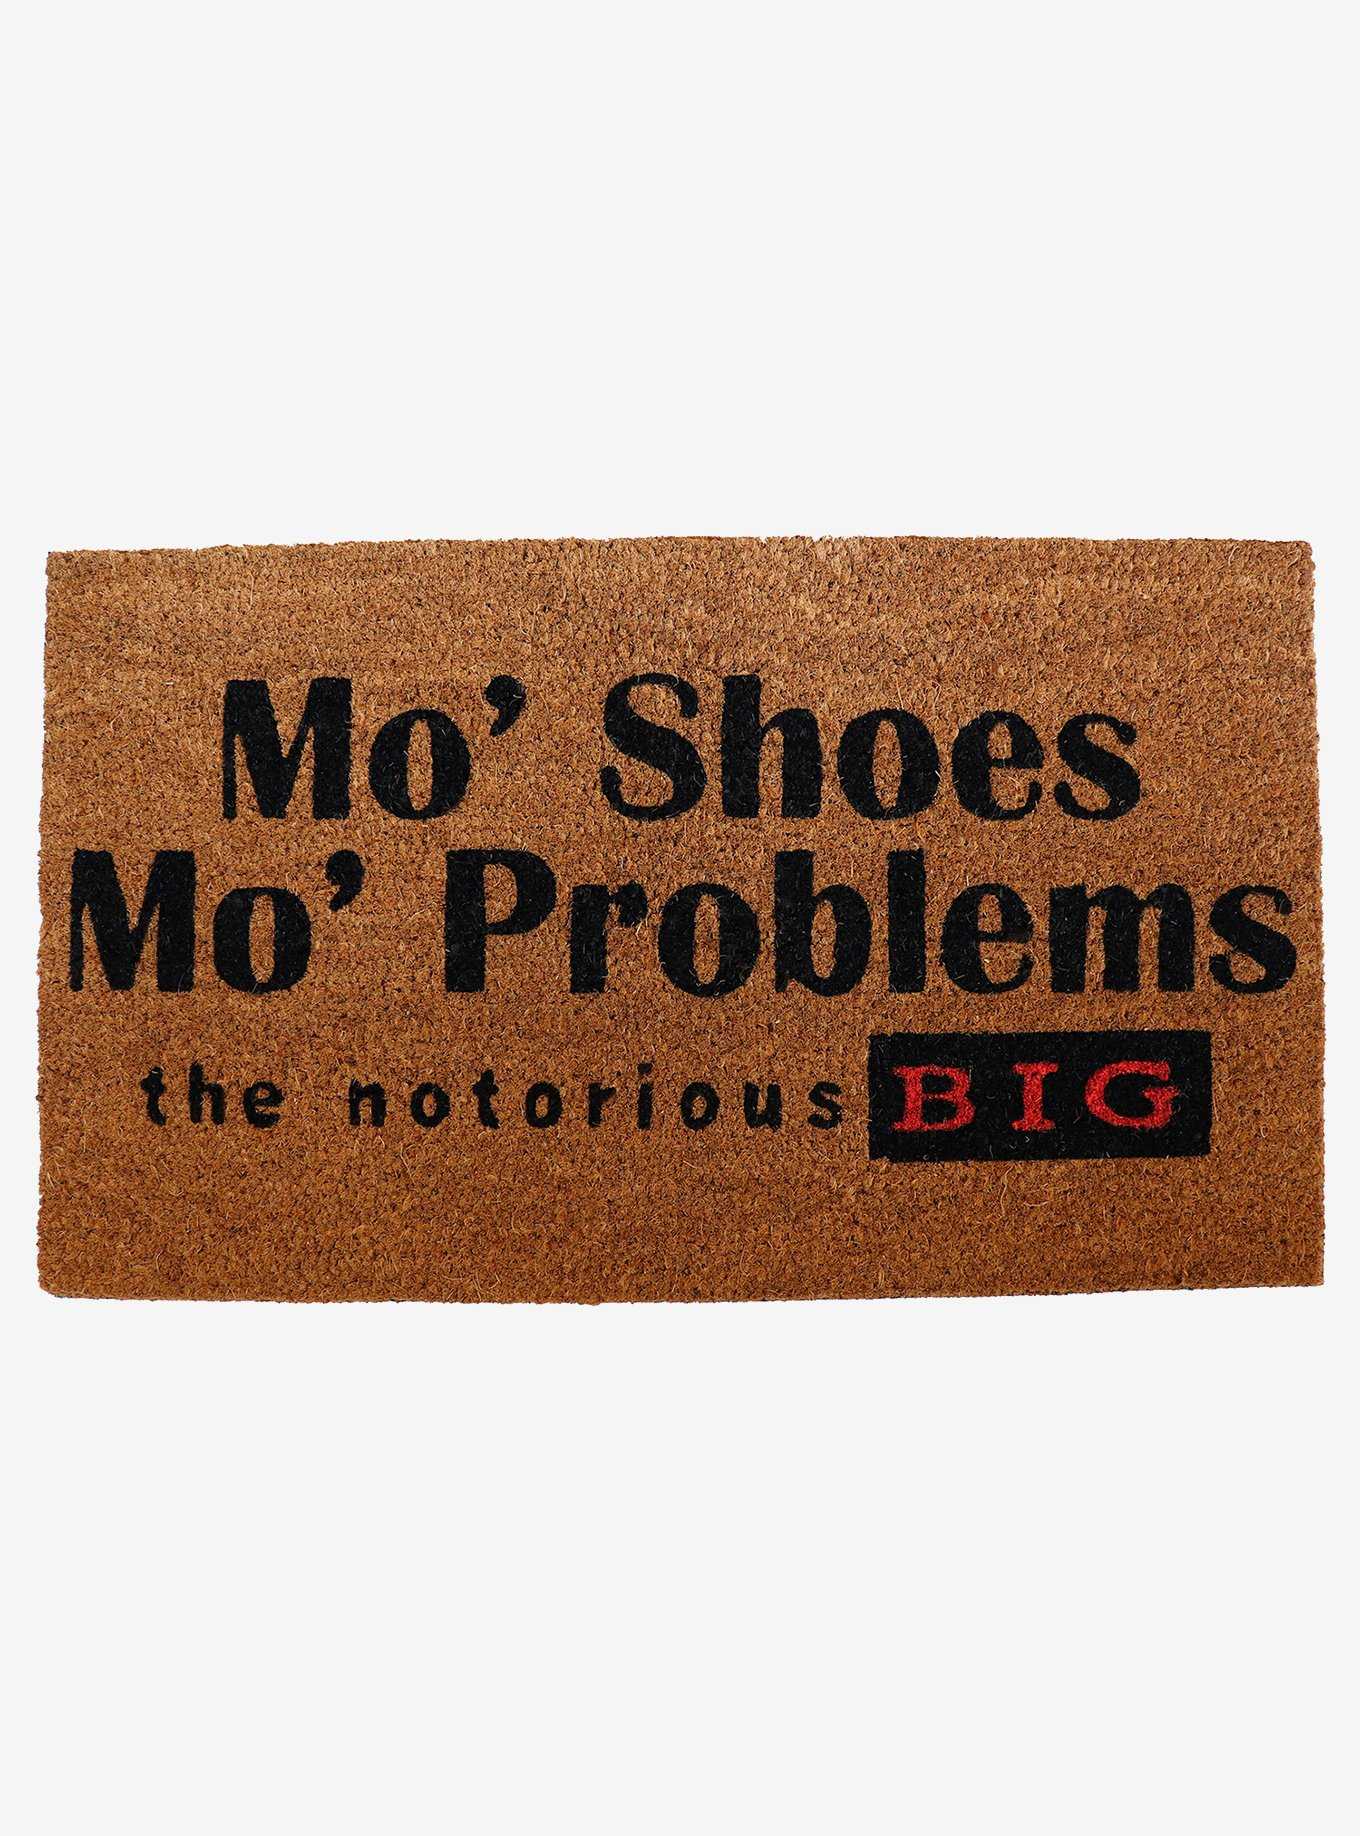 Notorious B.I.G. "Mo' Shoes, Mo' Problems" Doormat, , hi-res